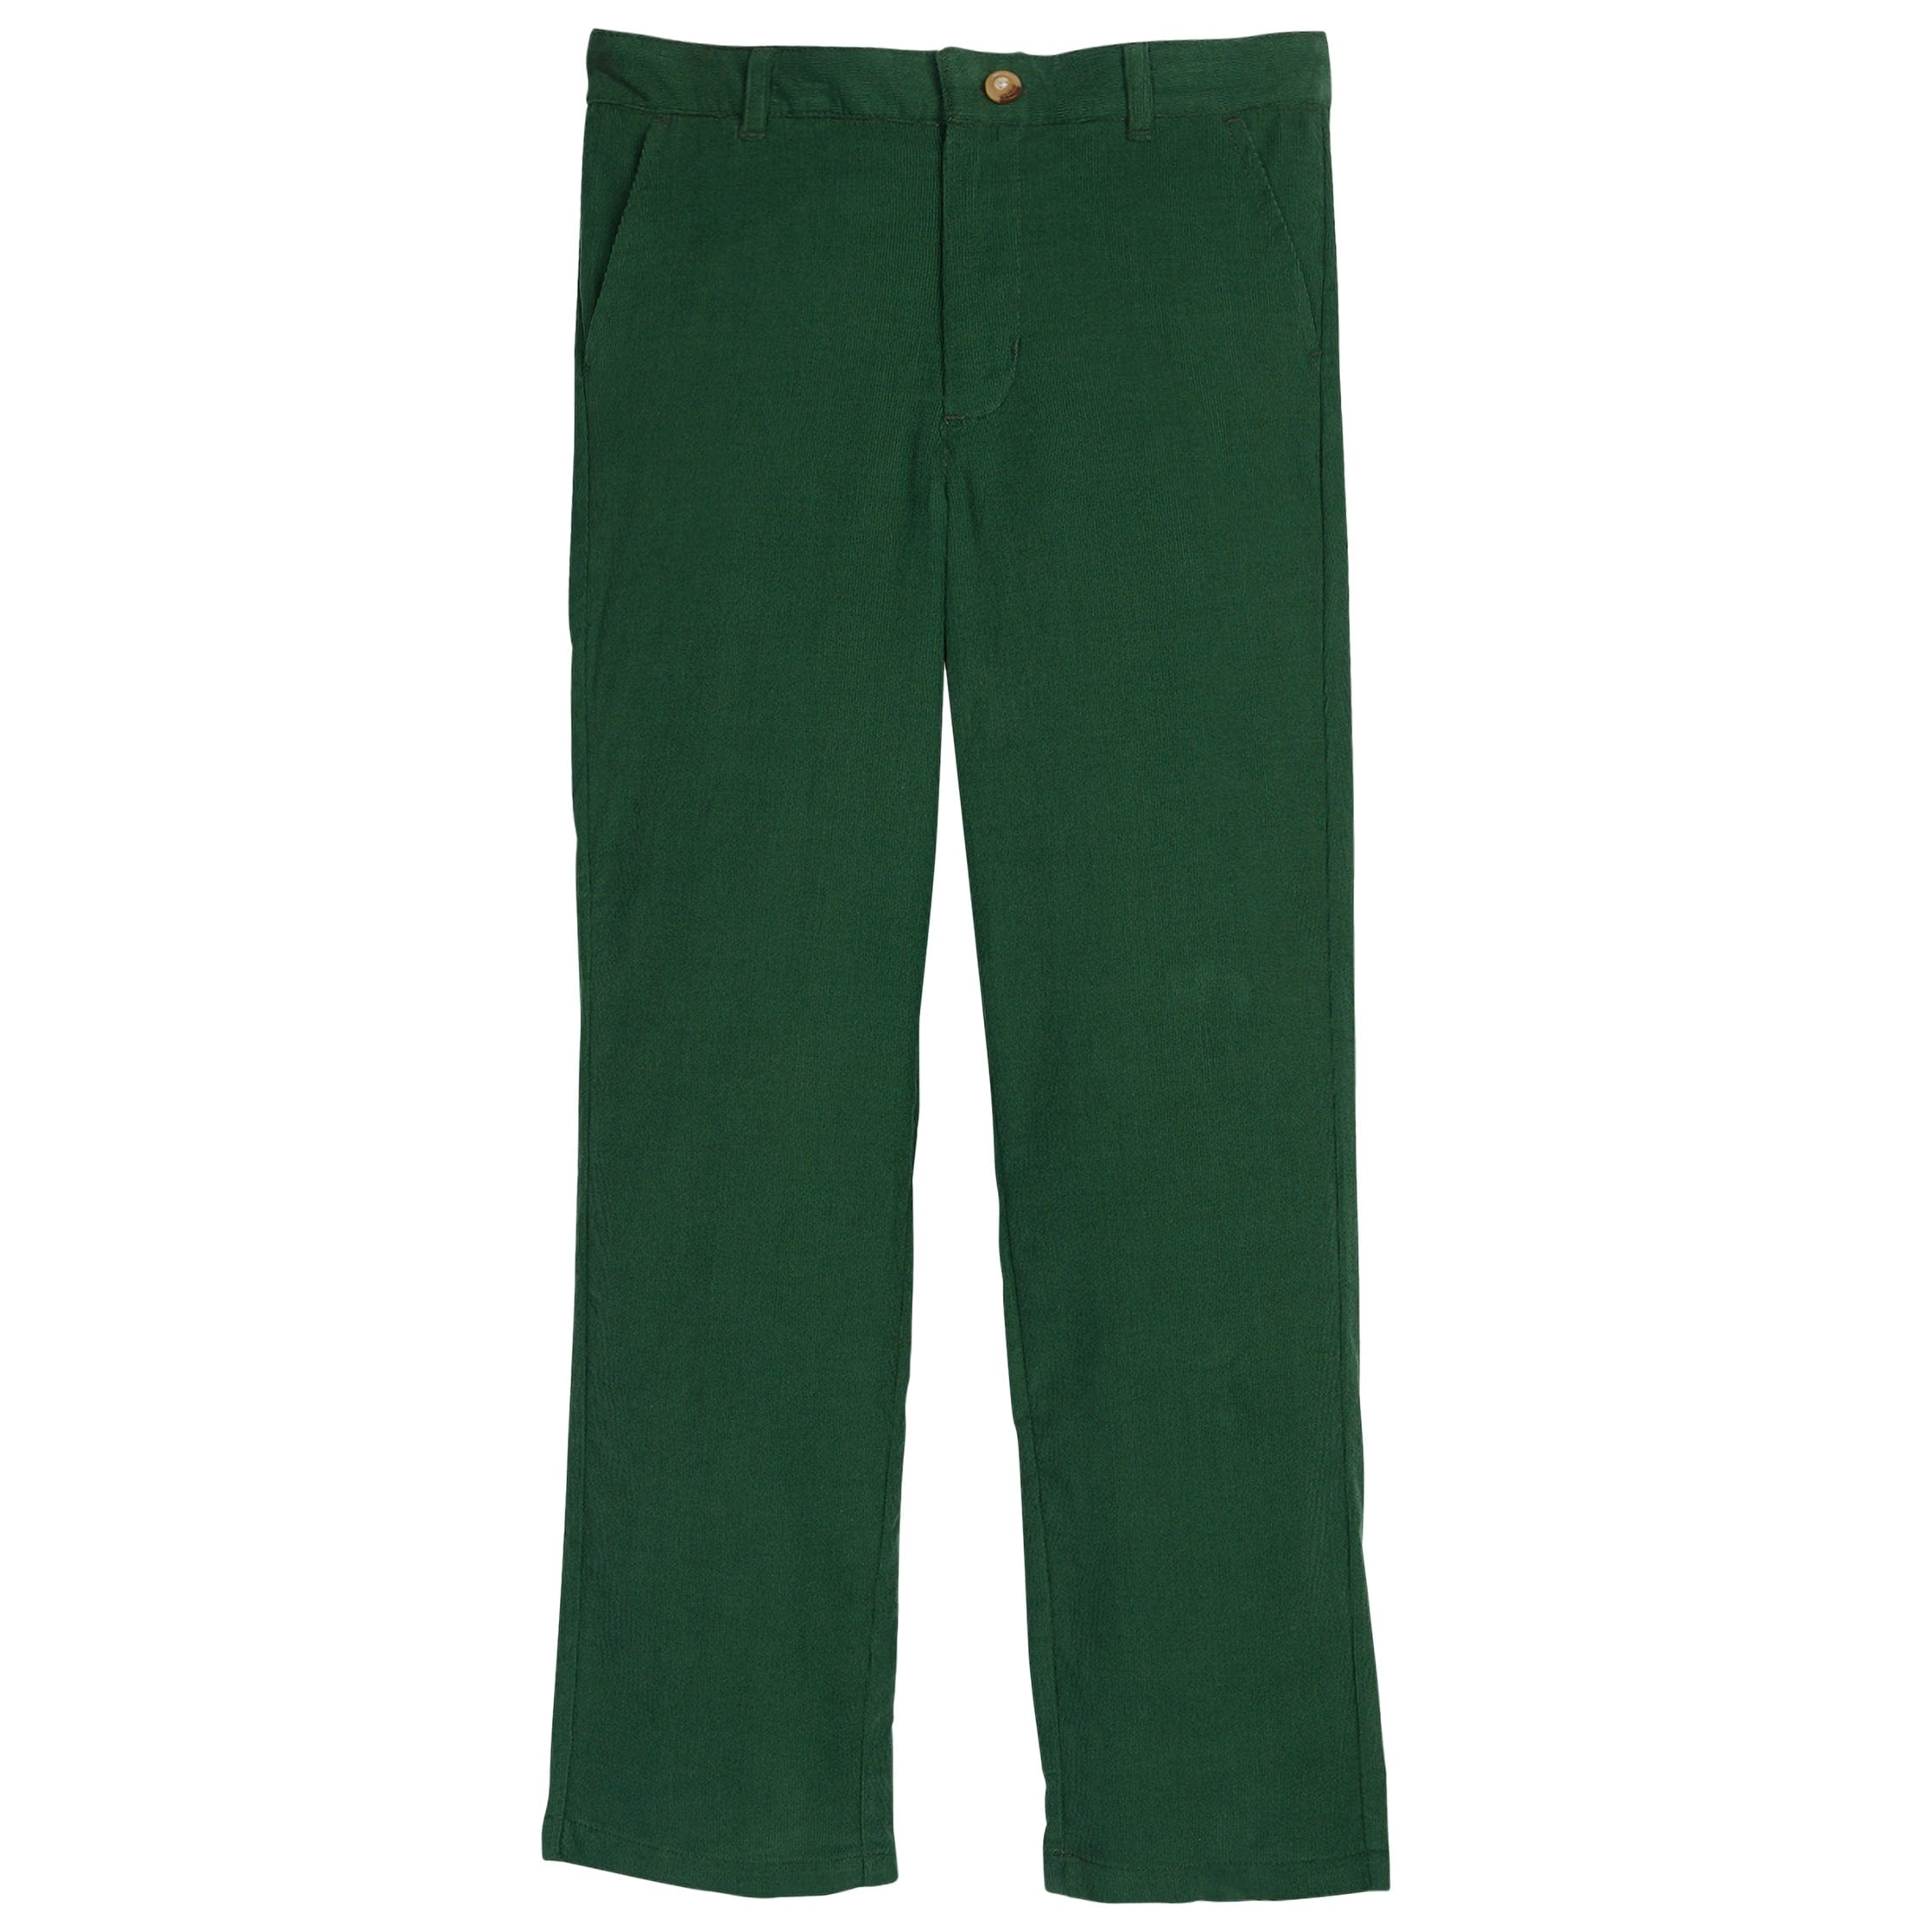 Green Corduroy Ashford Pants